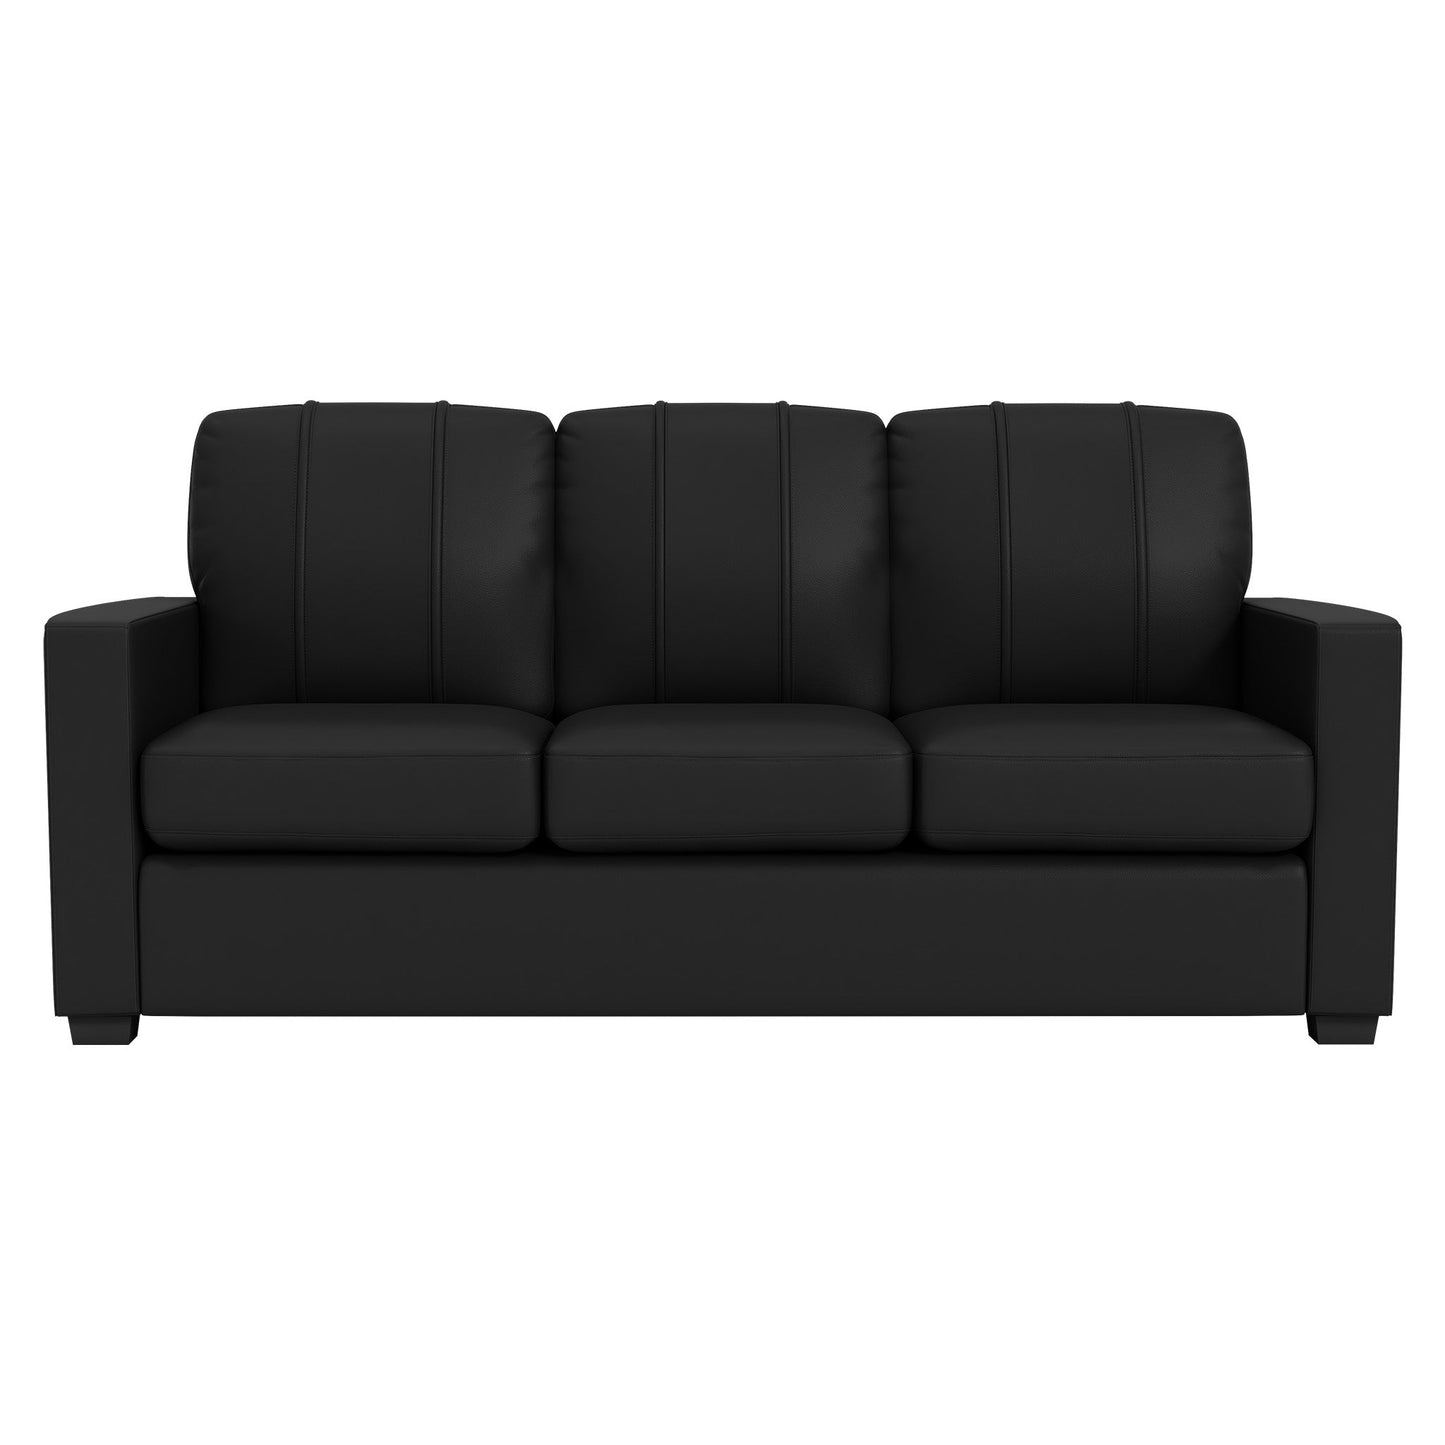 Silver Sofa with Major League Soccer Logo